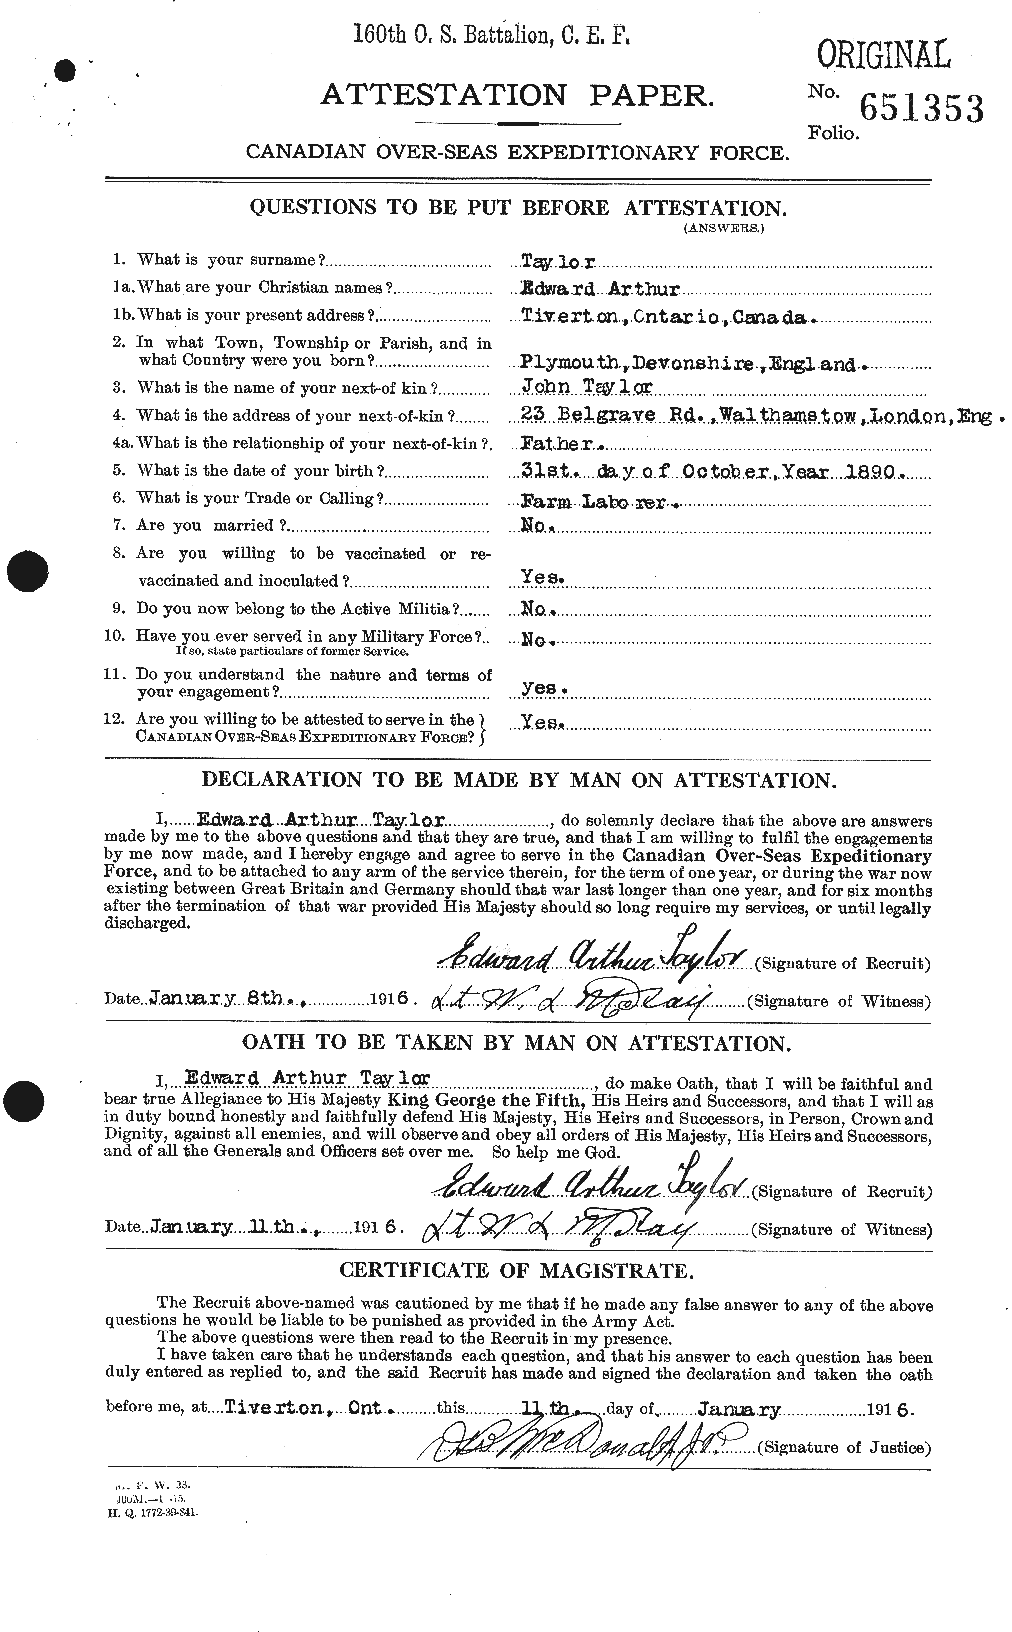 Dossiers du Personnel de la Première Guerre mondiale - CEC 627300a